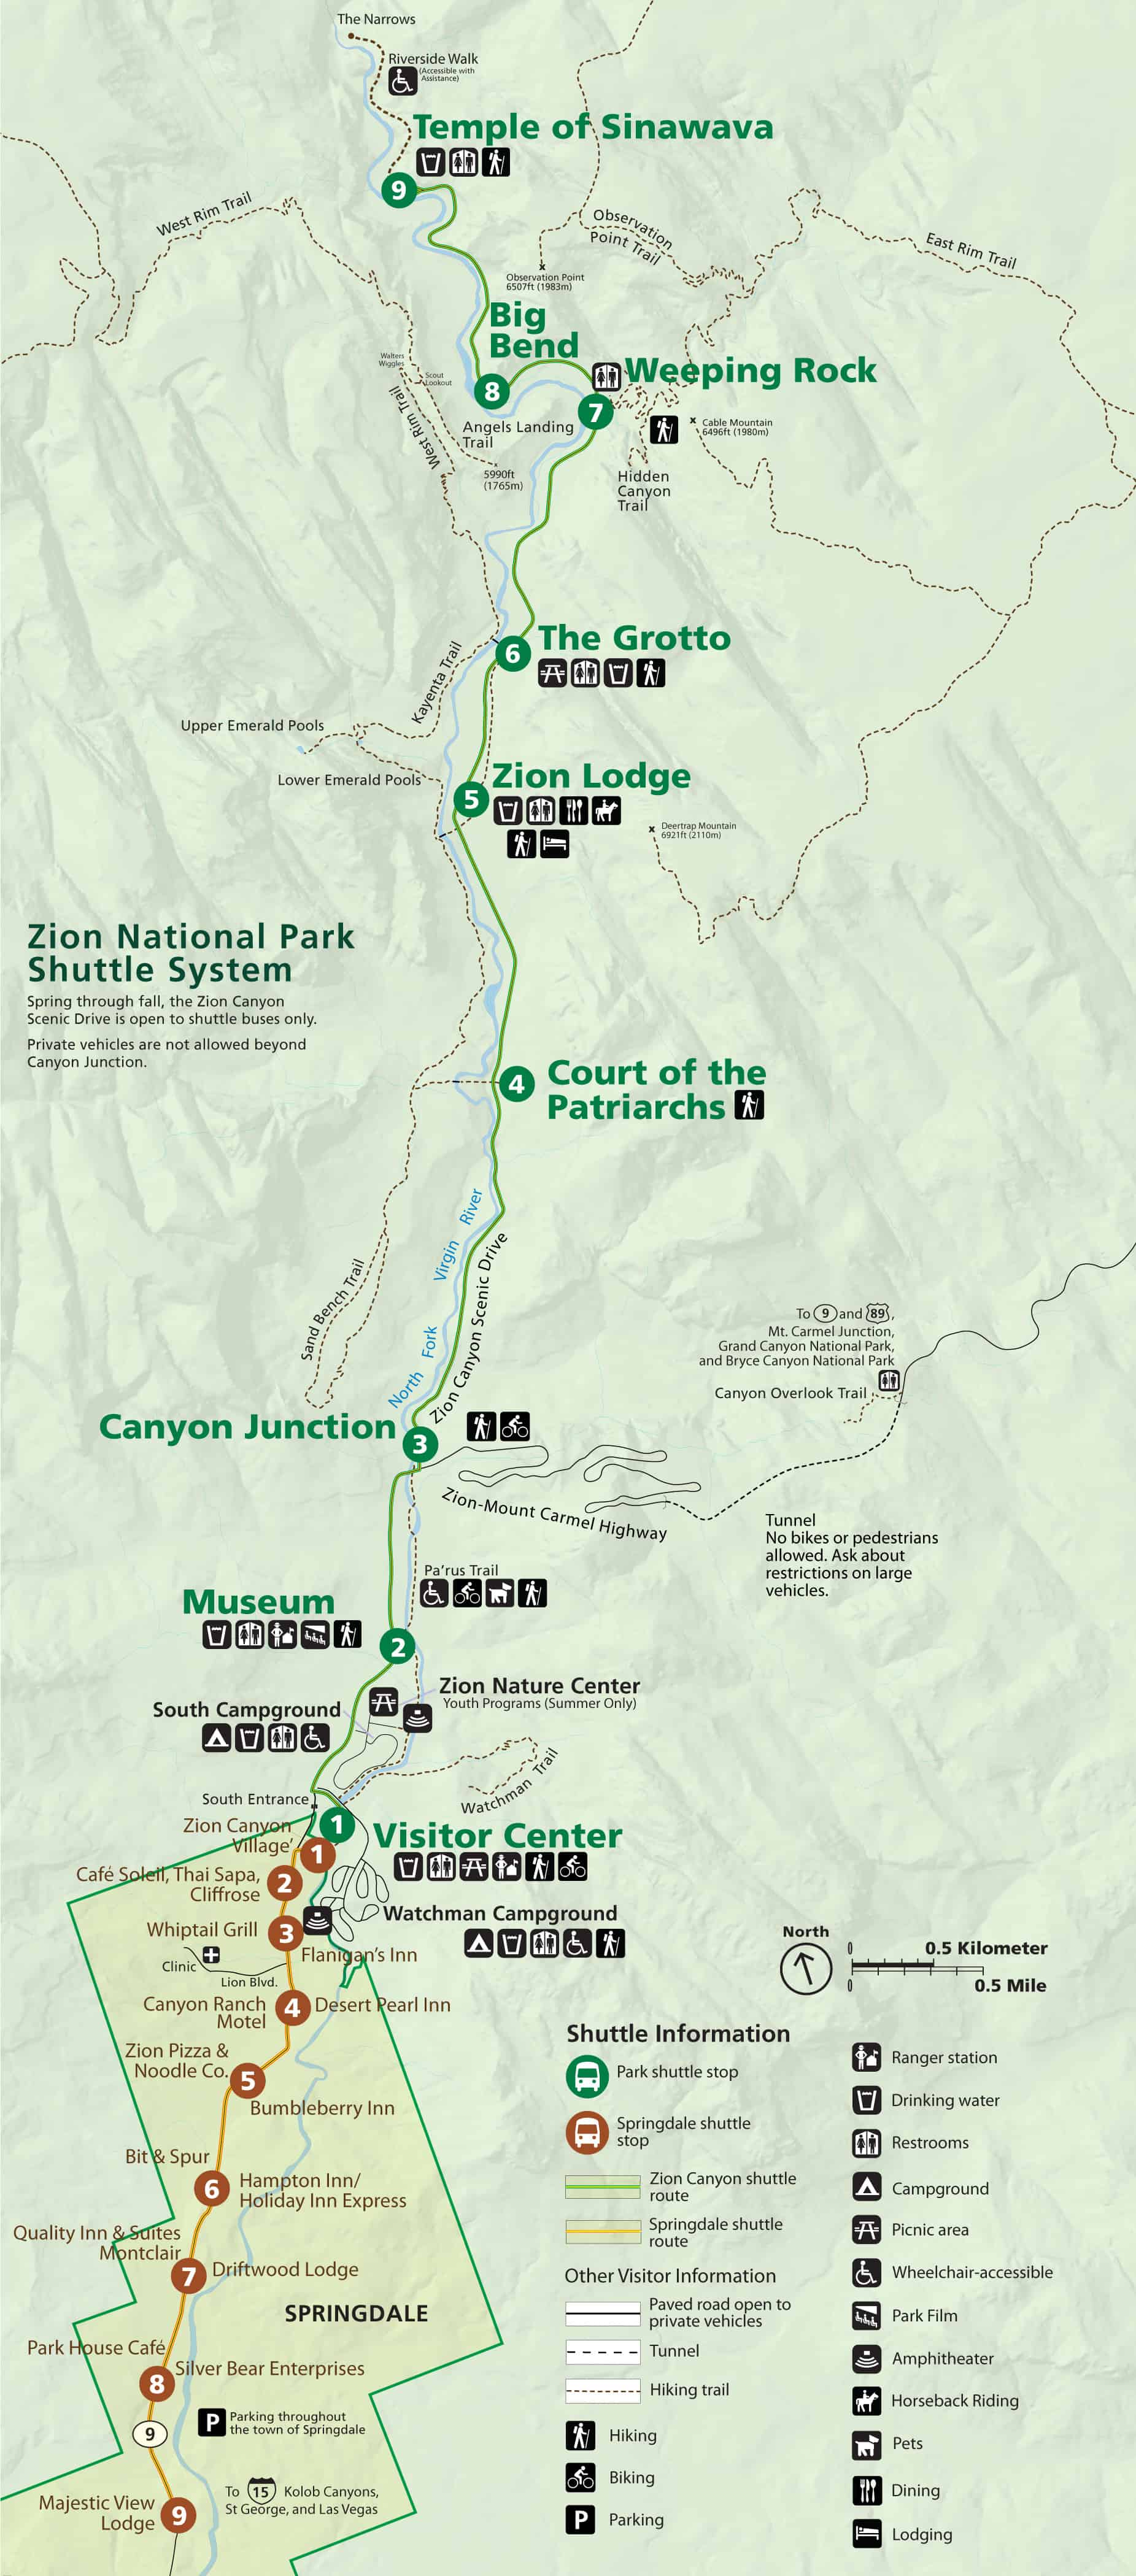 Mappa del bus gratuito dello Zion Park